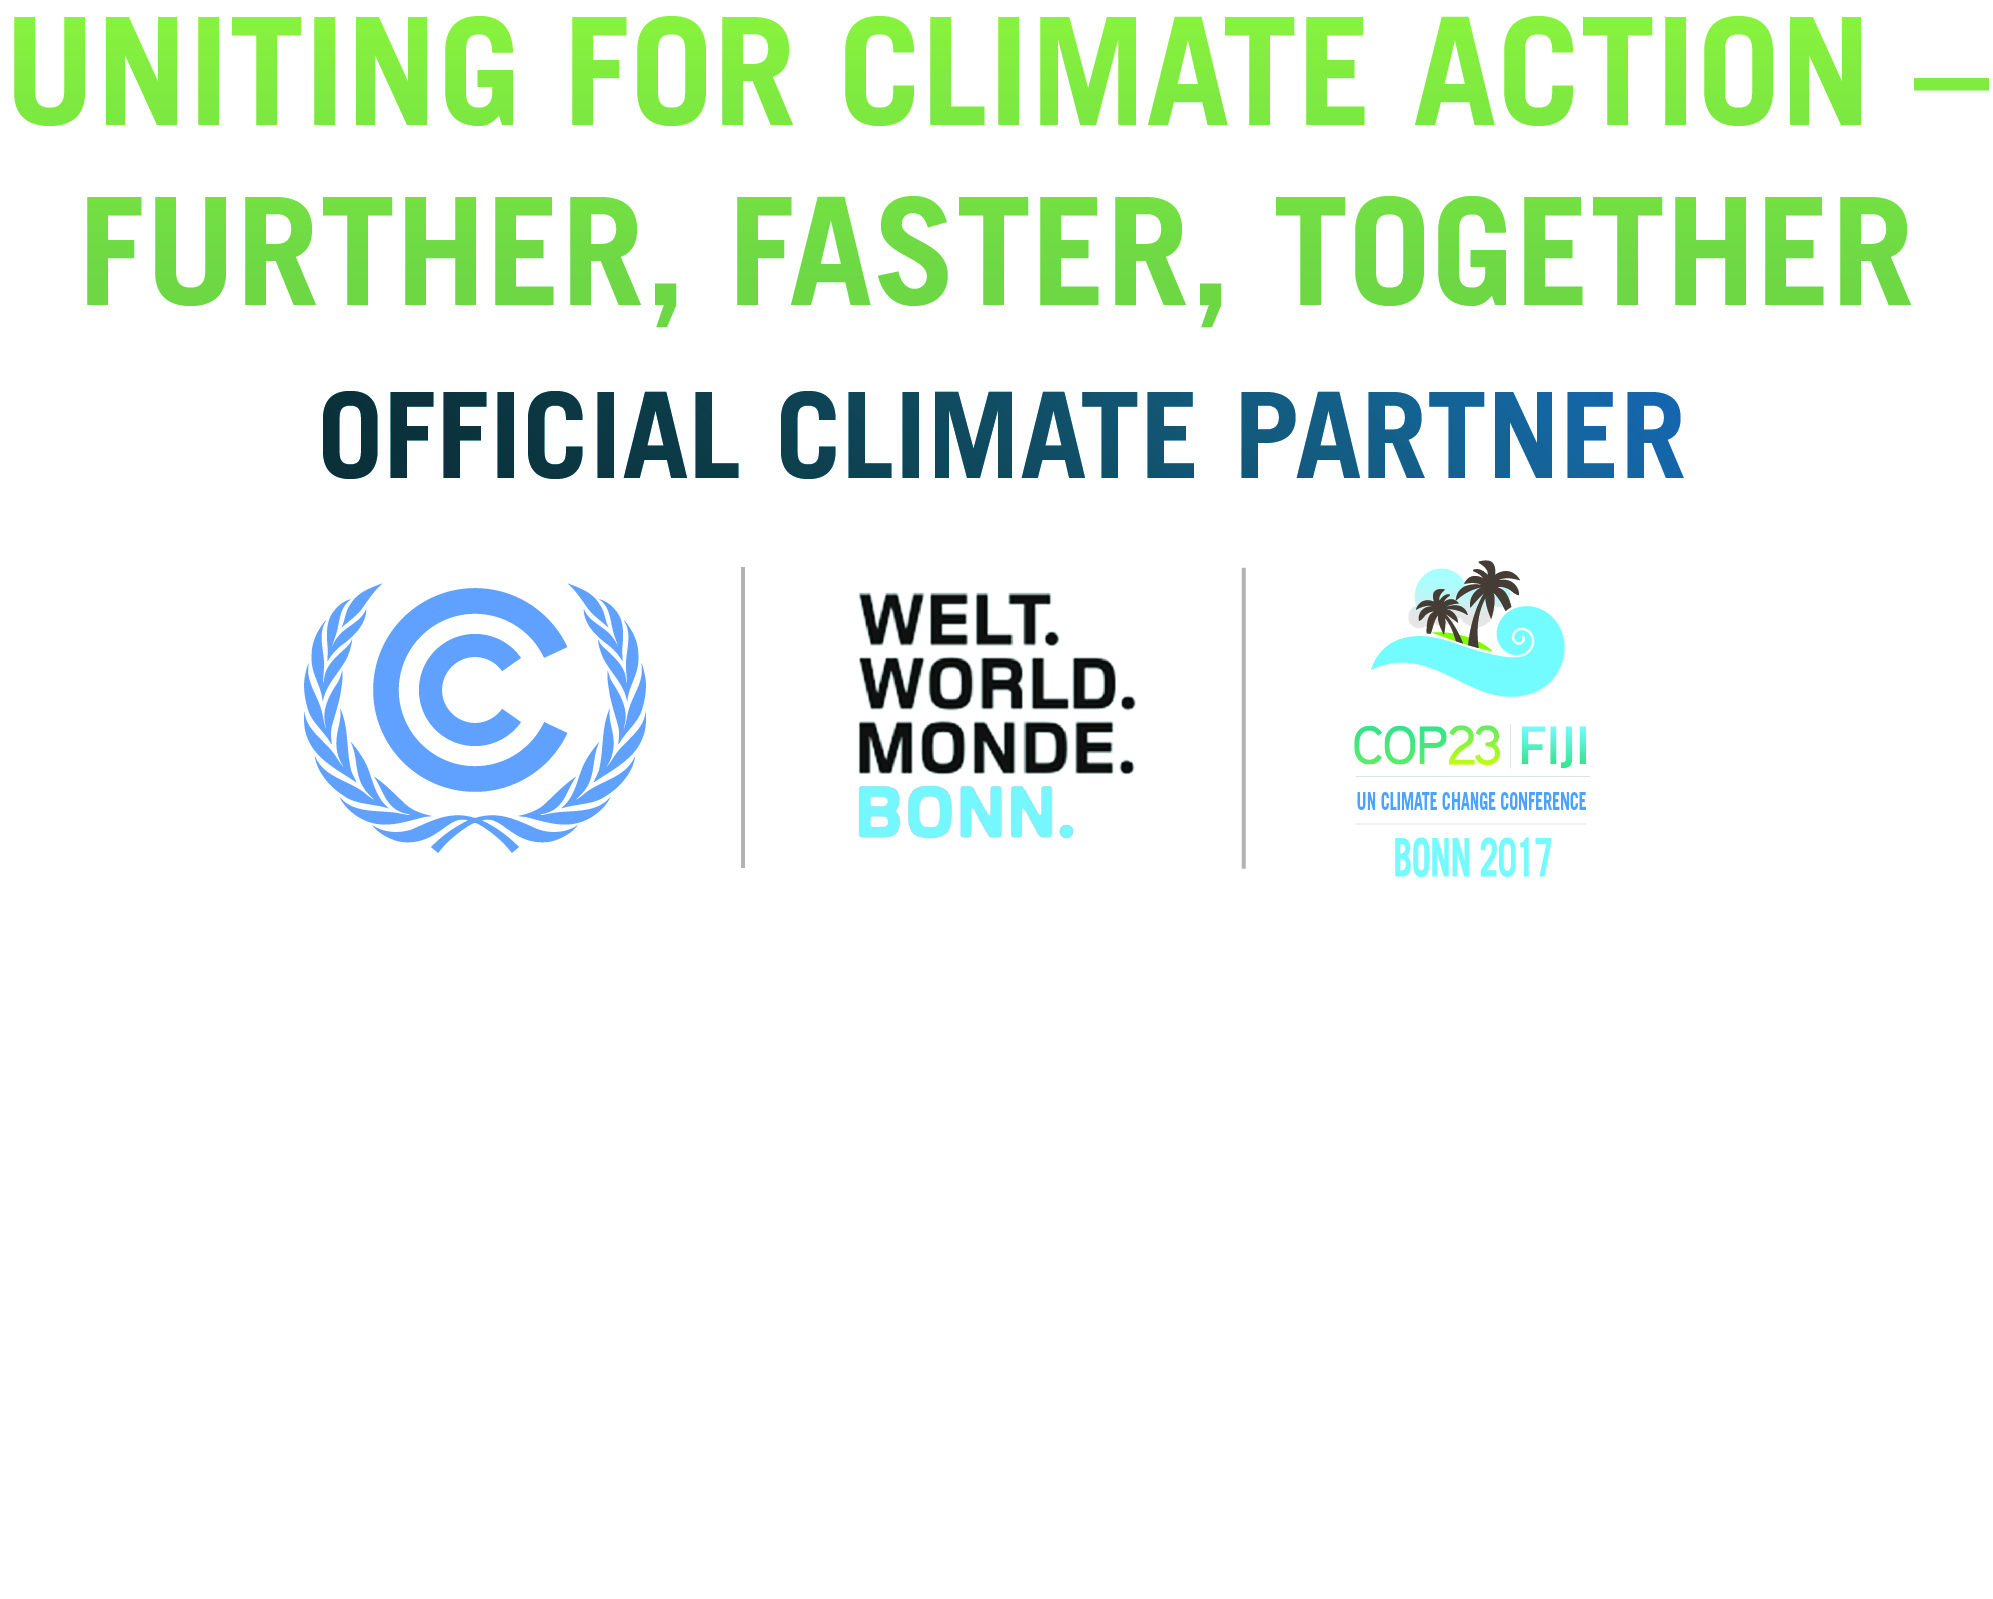 COP23 BonnCity Official Climate Partner Logo